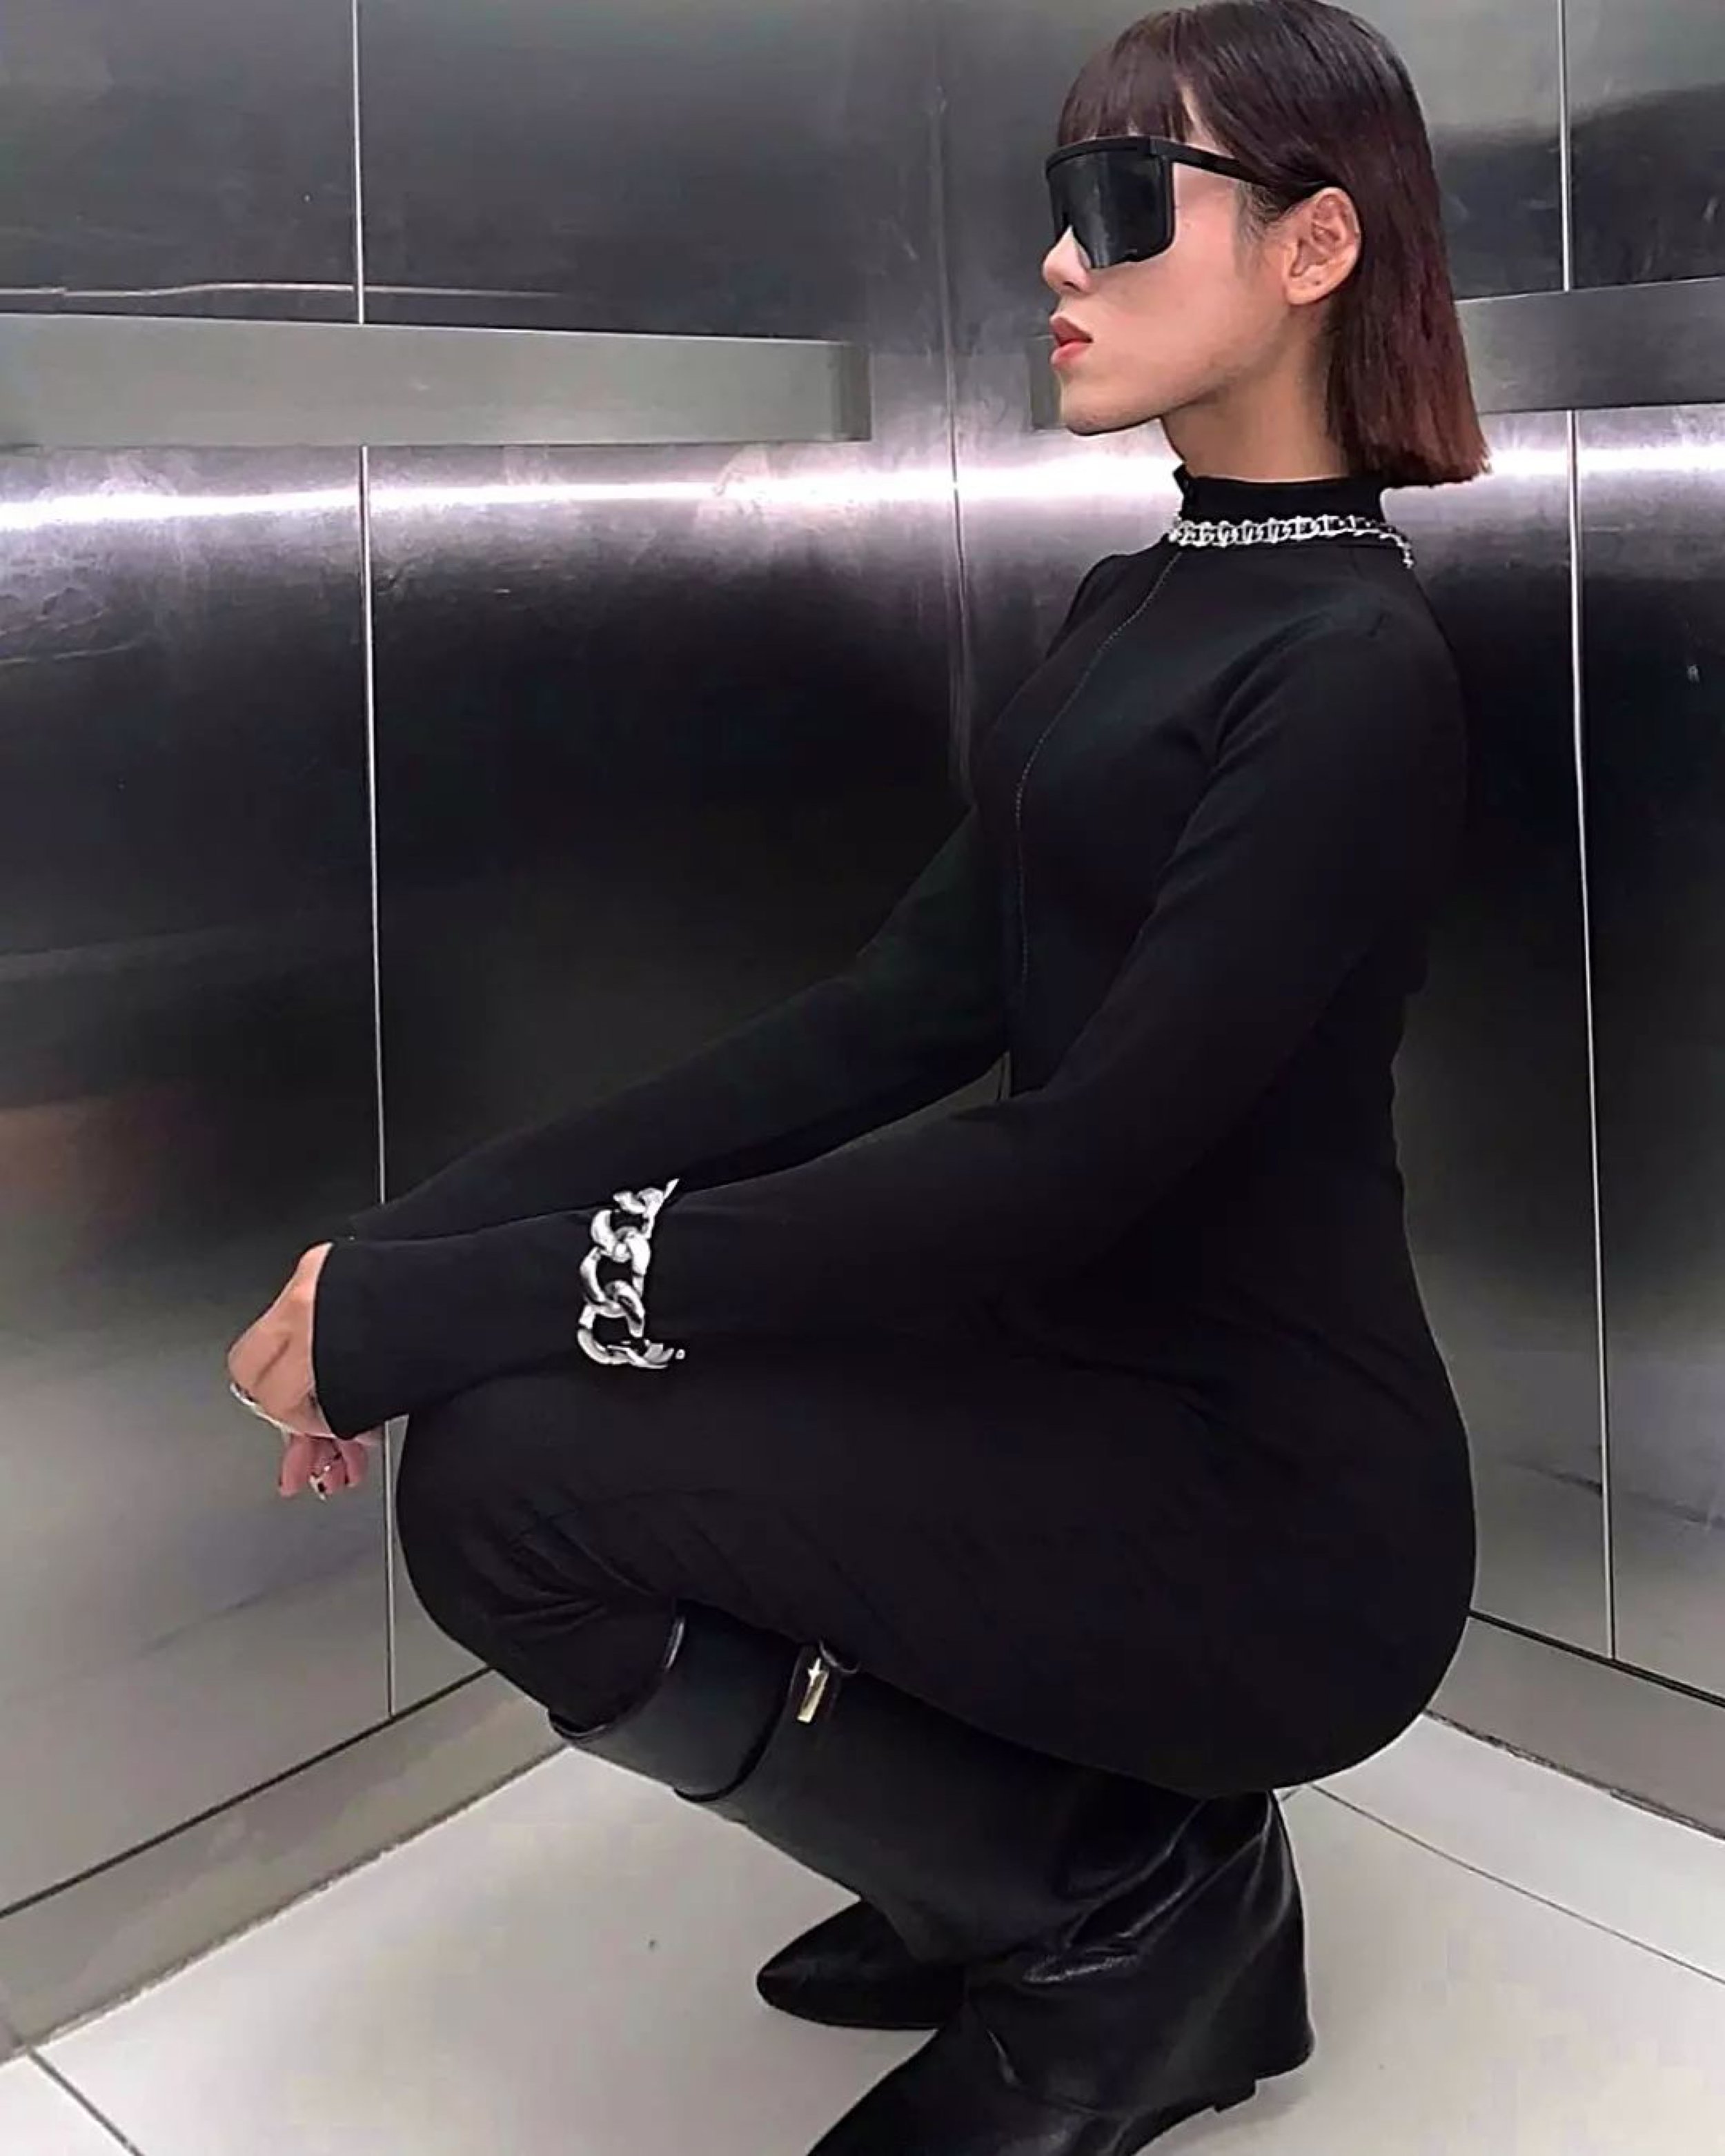 J Lo Fashion Model V Shades Sunglasses Boss Monolens 3.jpg